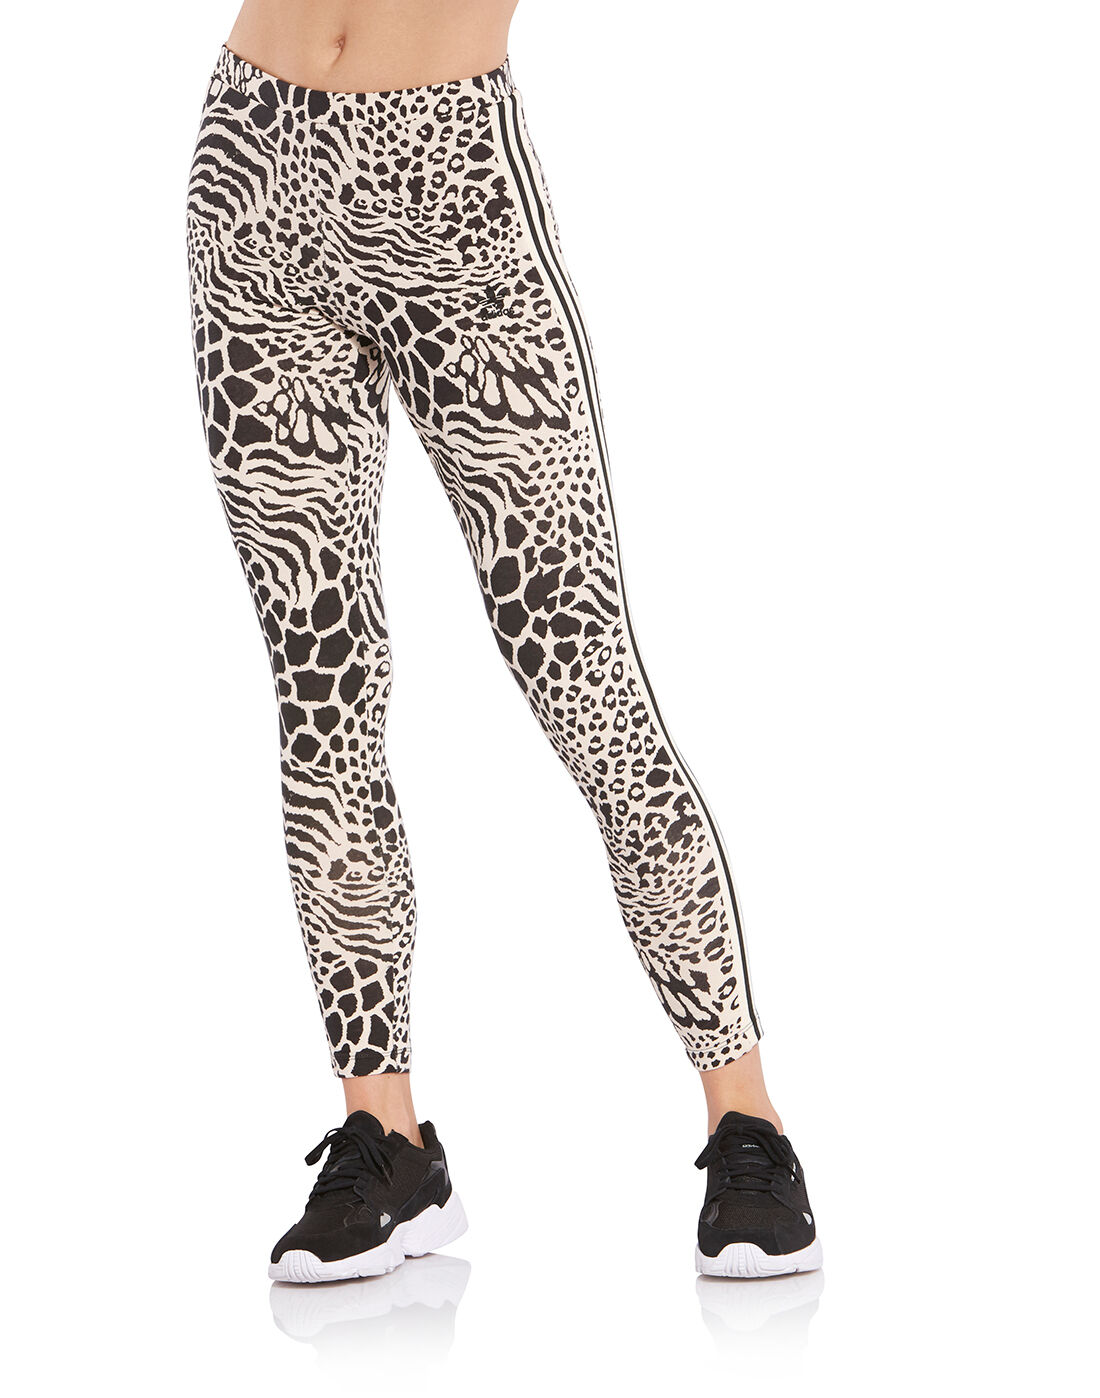 Leopard Print adidas Originals Leggings 